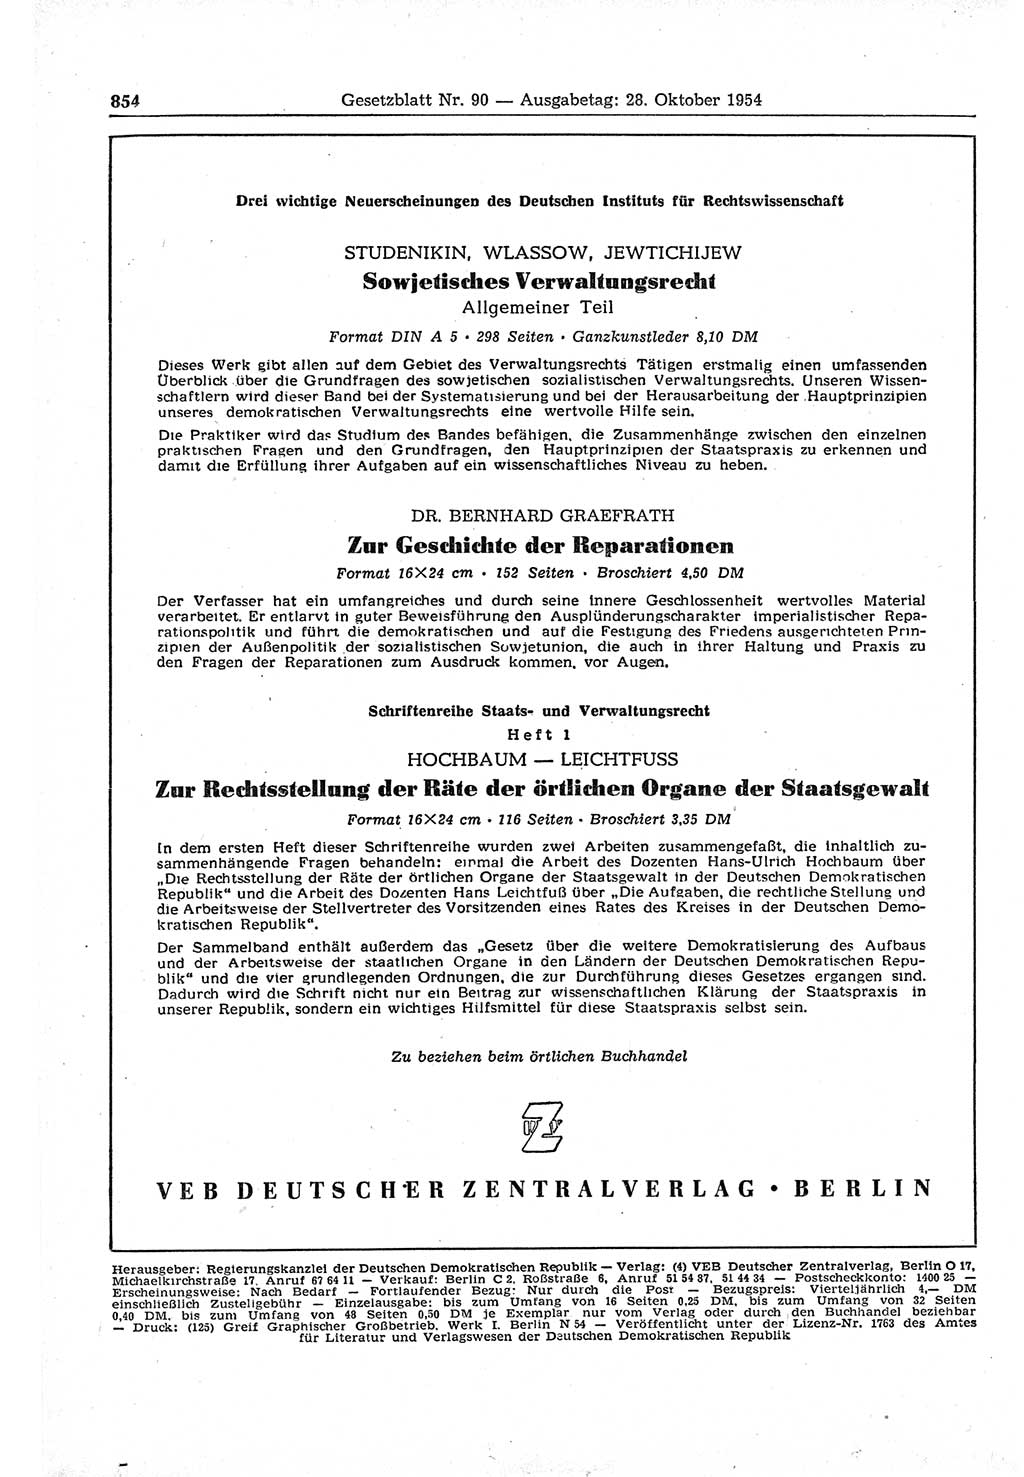 Gesetzblatt (GBl.) der Deutschen Demokratischen Republik (DDR) 1954, Seite 854 (GBl. DDR 1954, S. 854)